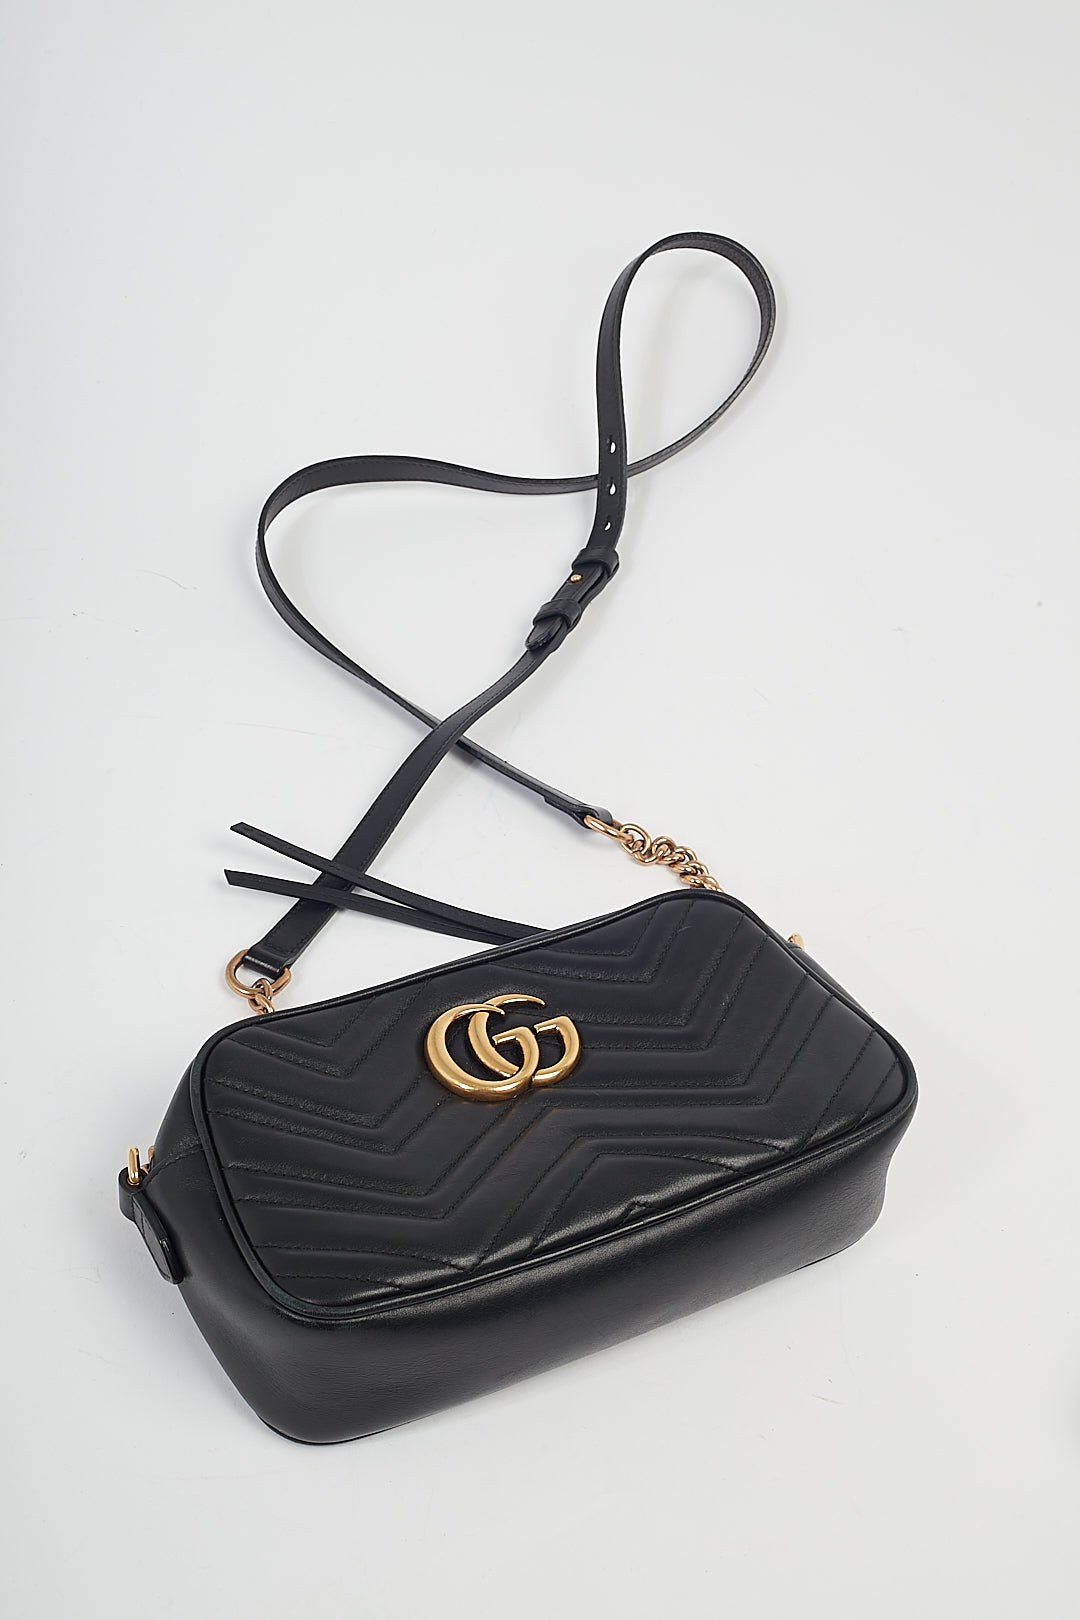 Petit sac photo Gucci en cuir noir Matelasse GG Marmont